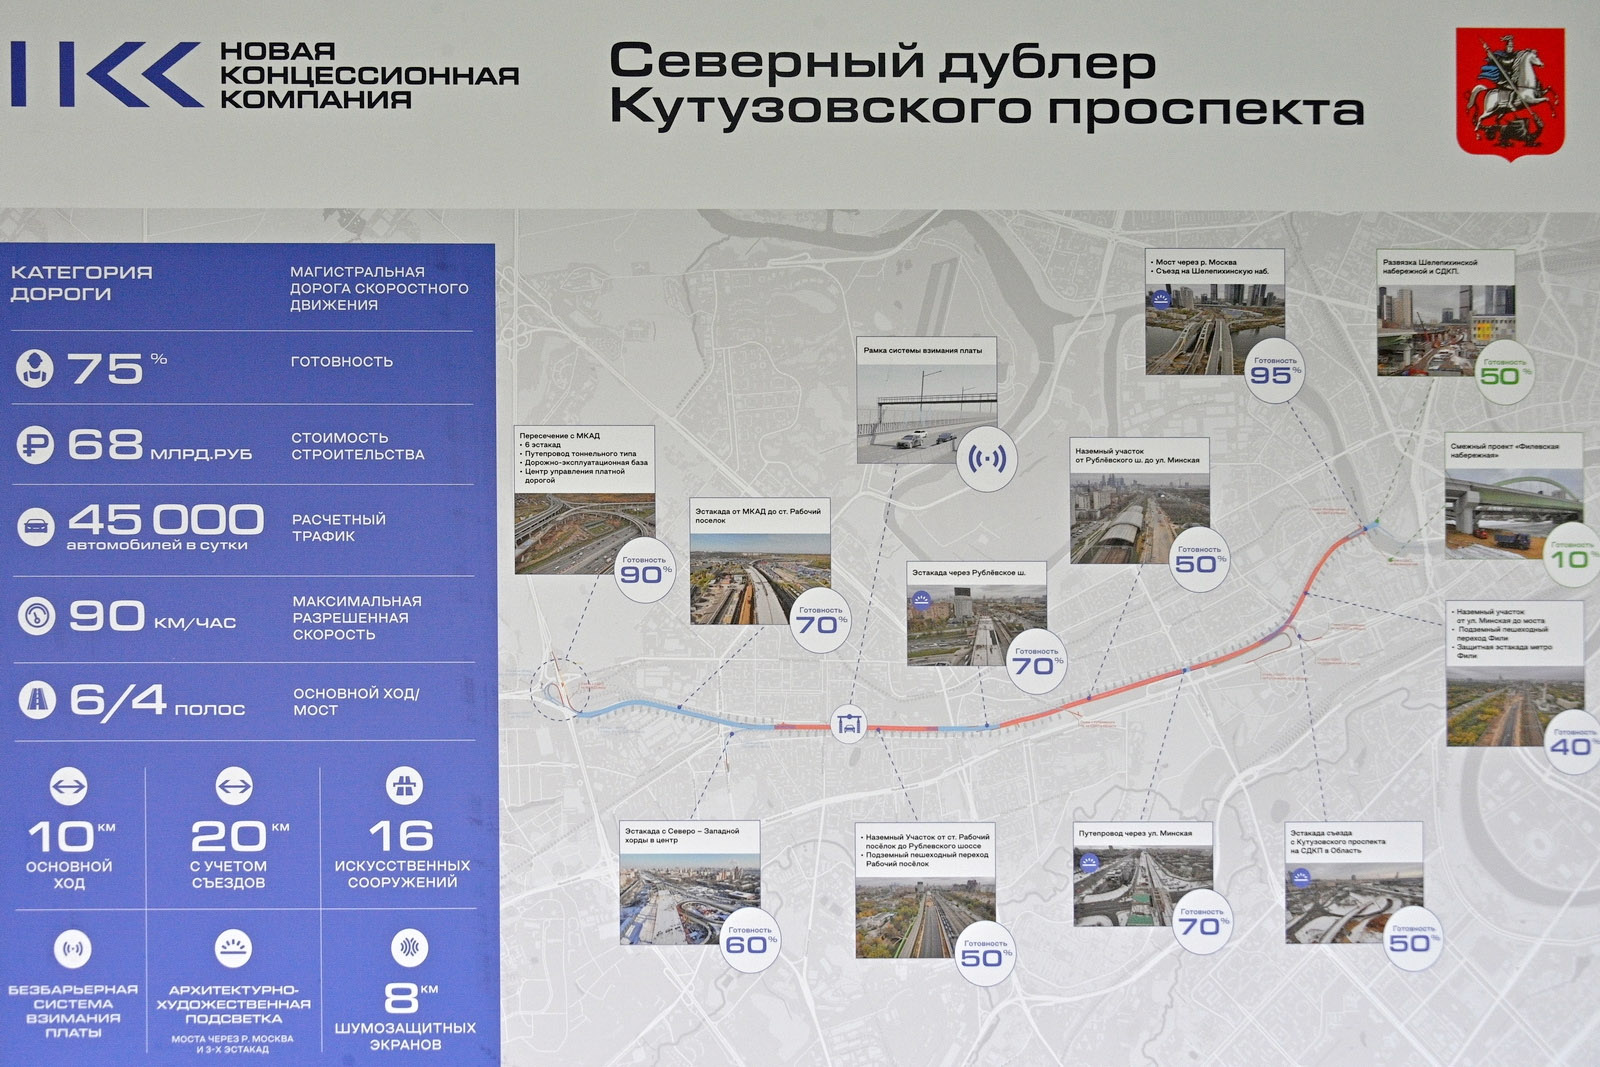 Схема северного дублера Кутузовского проспекта